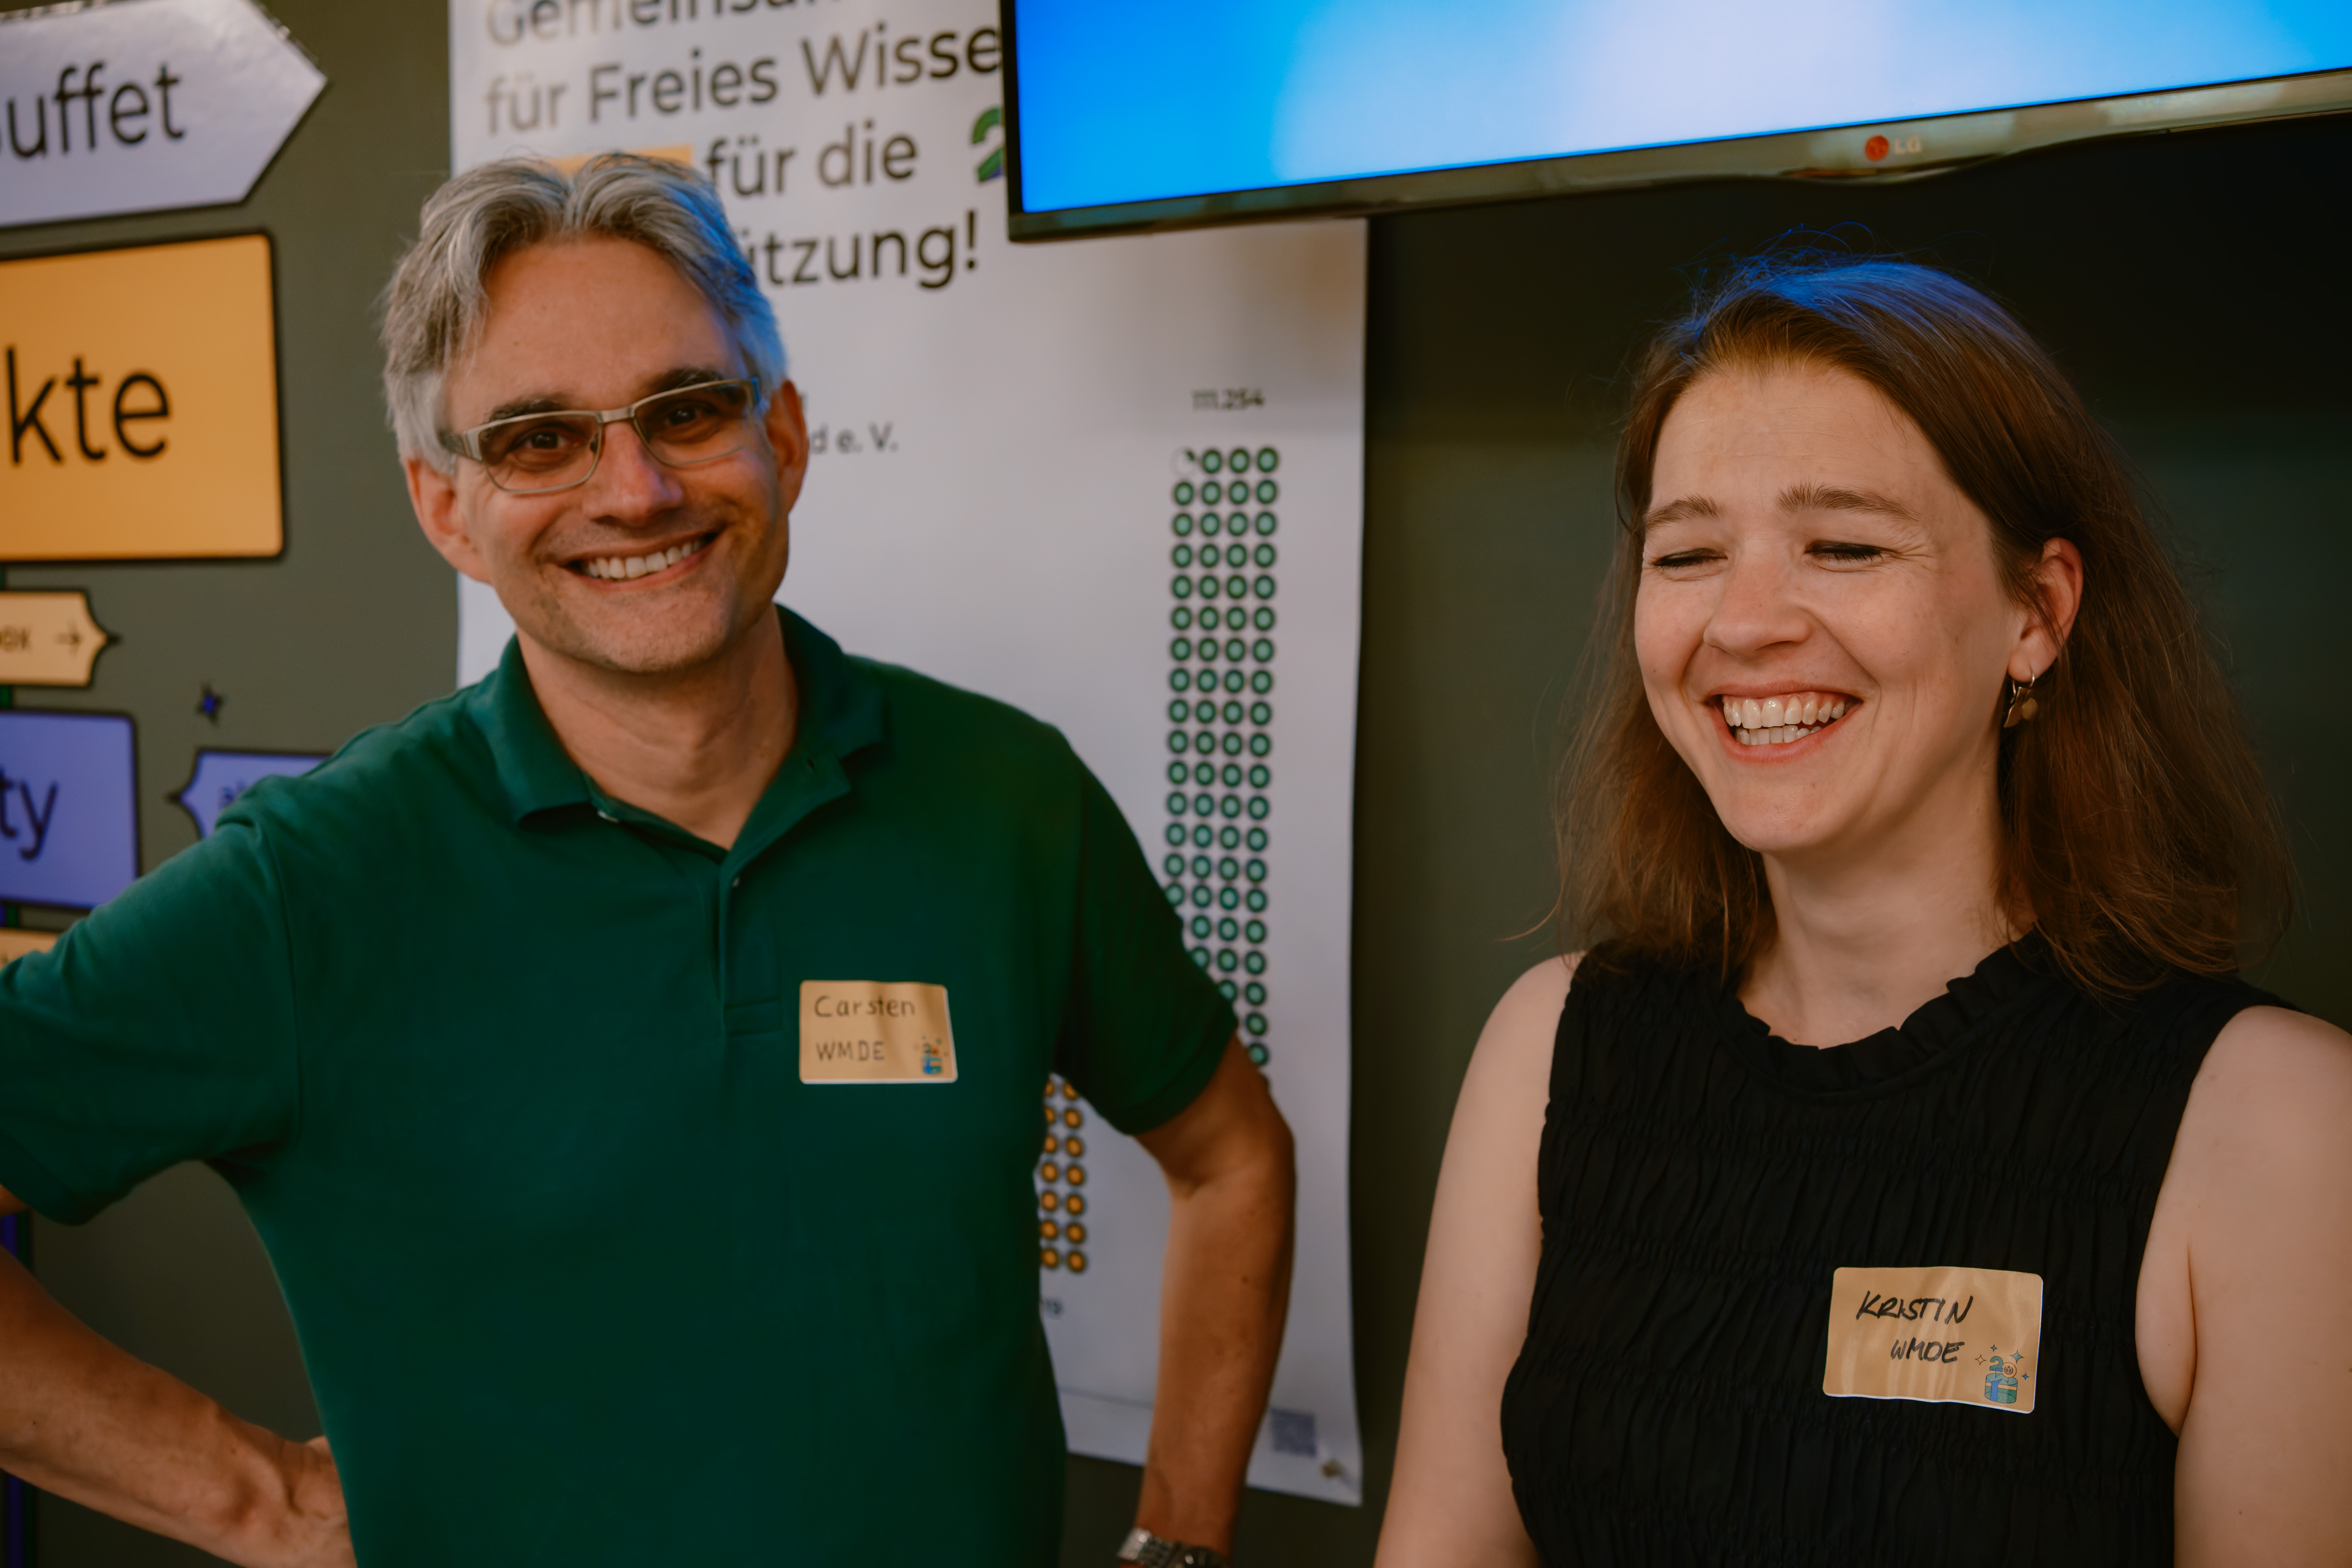 Kümmern sich bei Wikimedia Deutschland um Fundraising und Partnerschaften: Carsten Direske (l.) und Kristin Westermann (r.). Sie hatten köstliche Wikimedia-Schokoladen dabei und konnten damit den vielen Mitgliedern, die der Einladung zum Fest gefolgt waren, ein kleines Dankeschön bereiten.